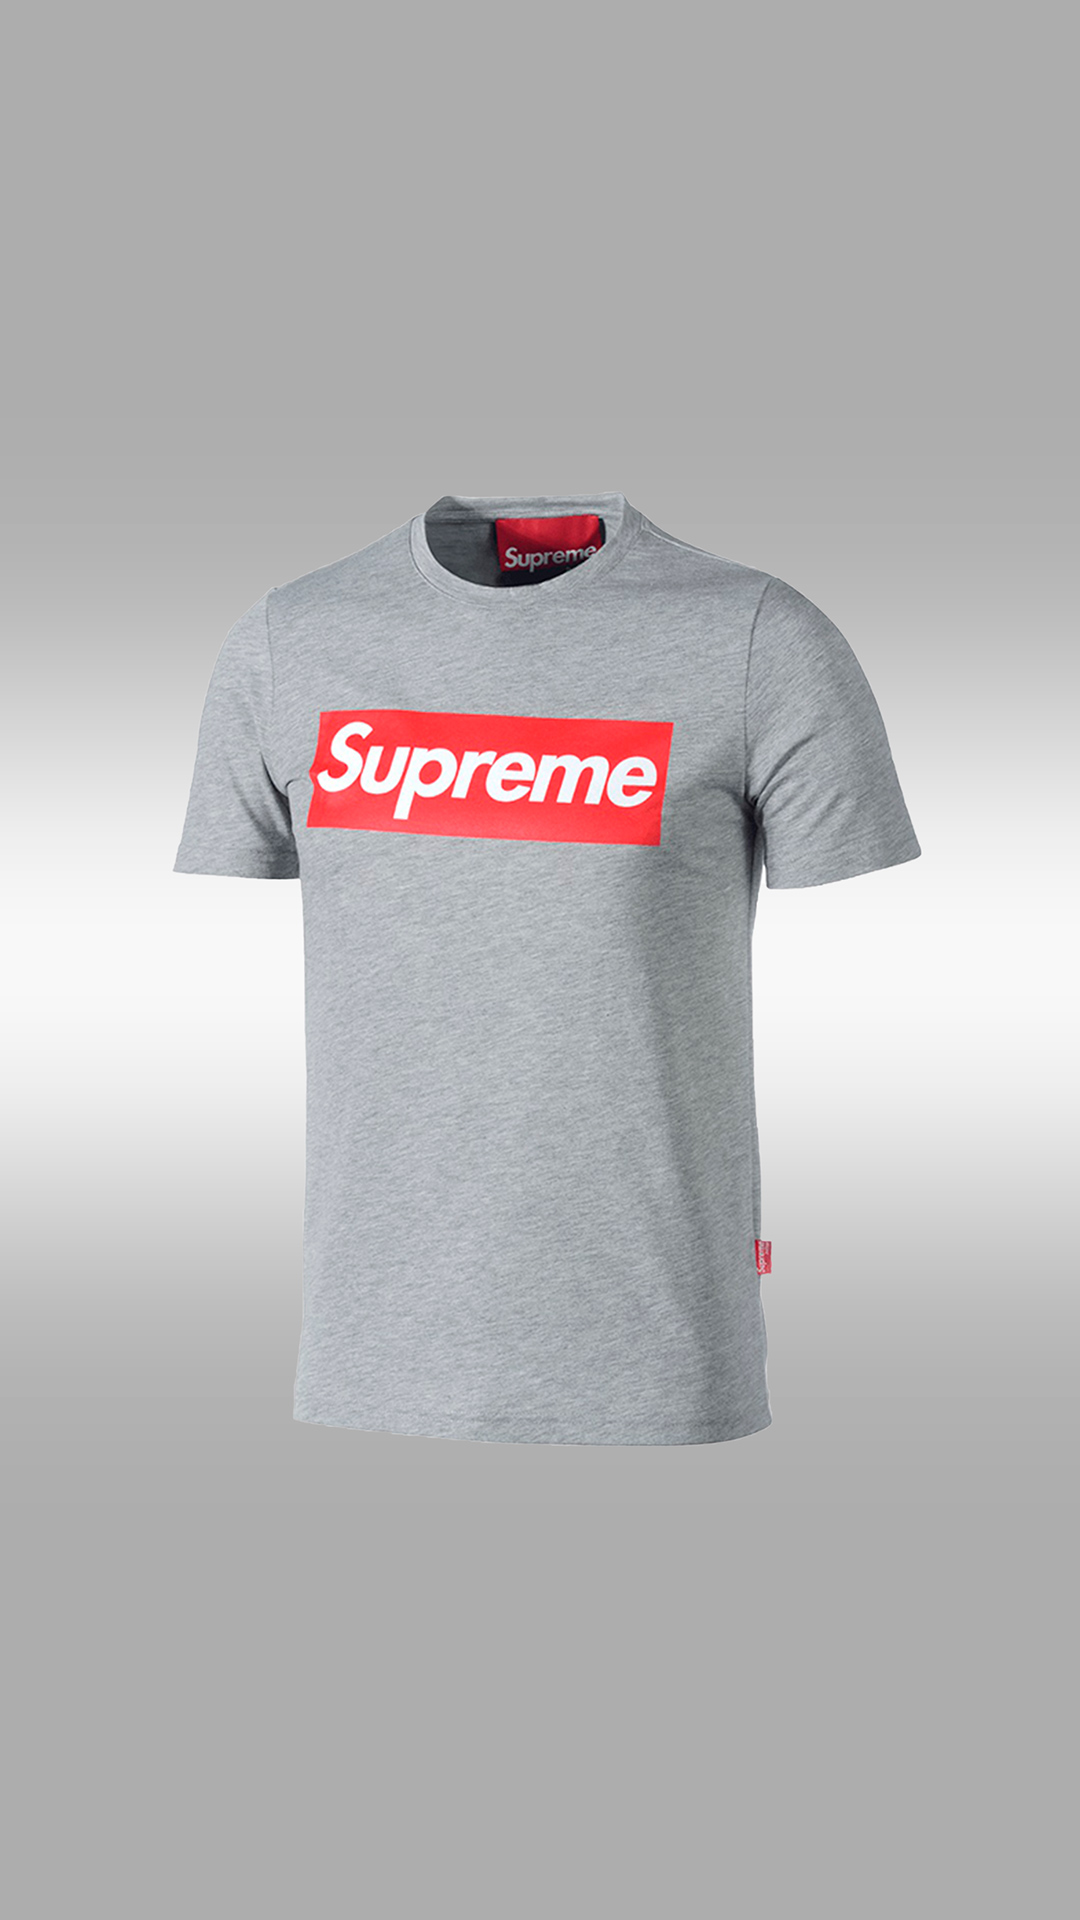 Supreme T-shirt Wallpaper